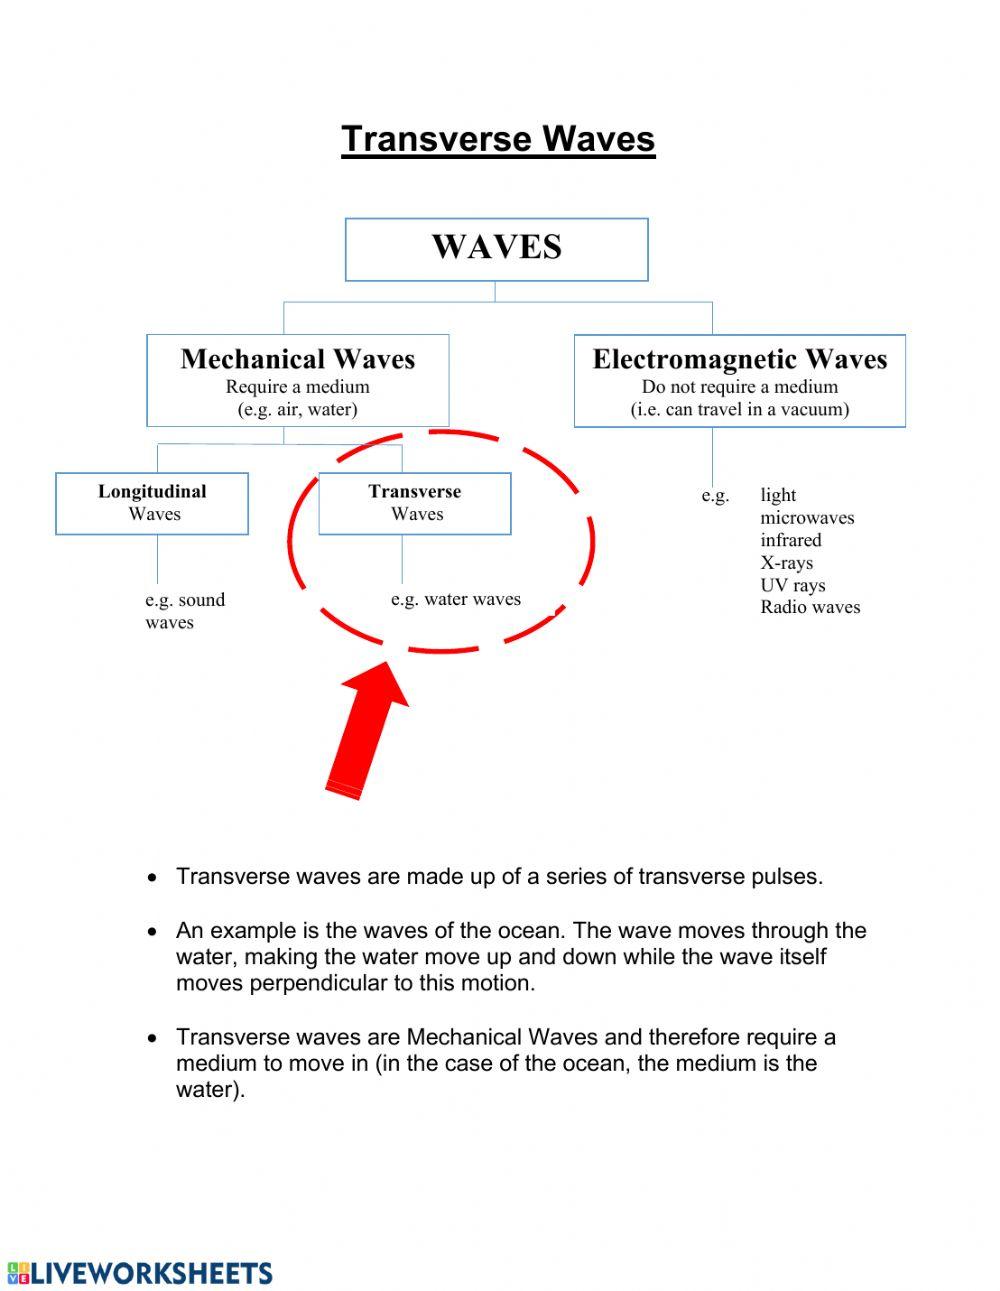 Waves 2: Transverse Waves